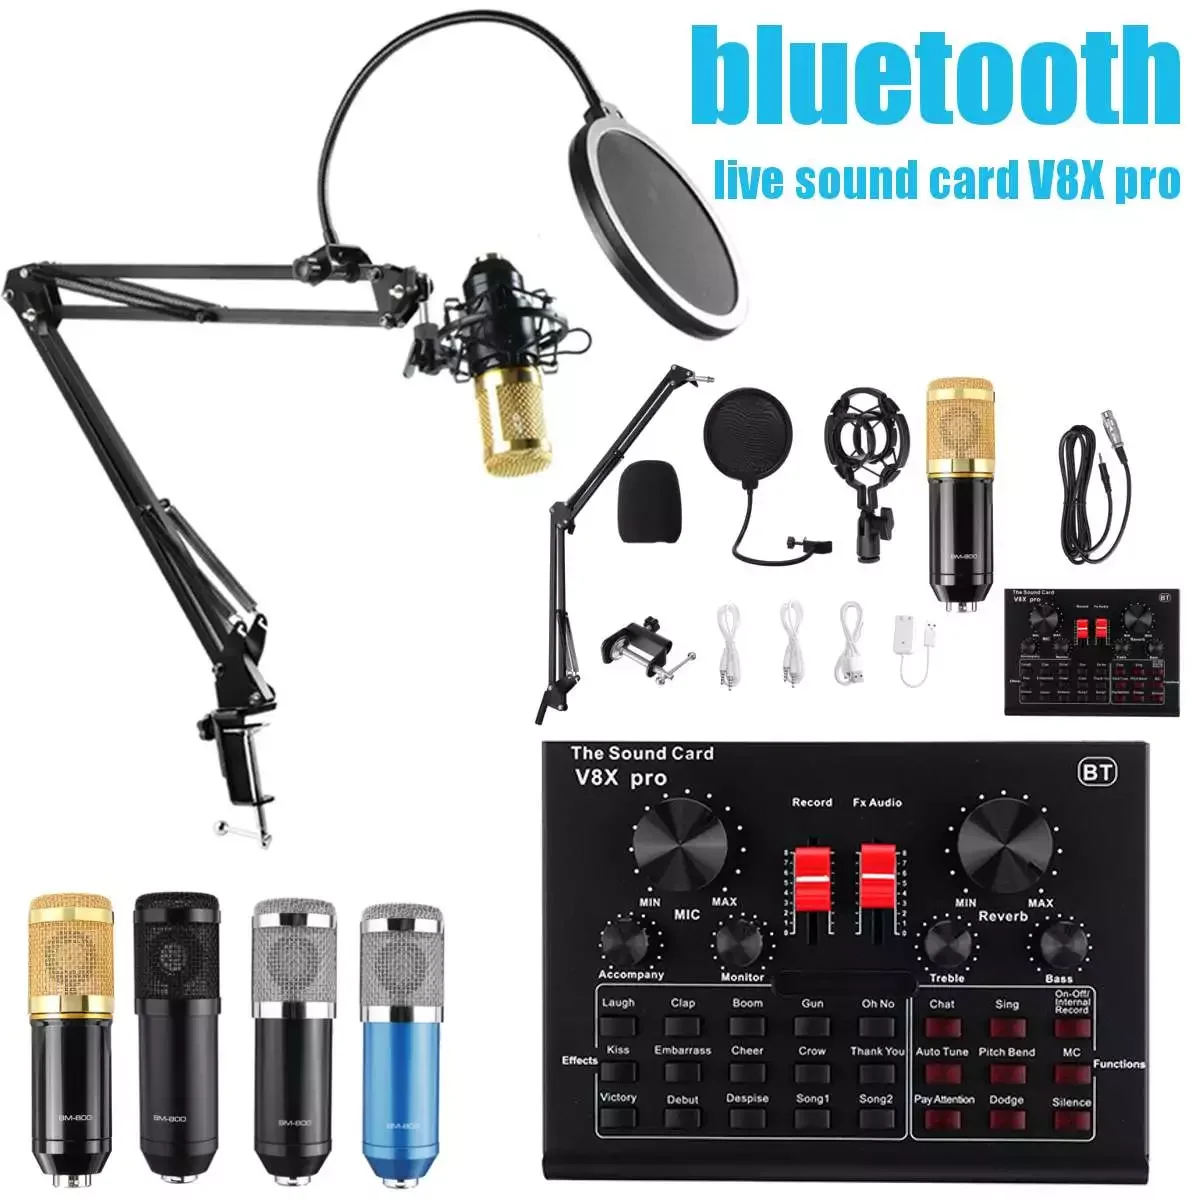 

Профессиональный микрофон BM800, звуковая карта для ПК, игр, прямой трансляции, dj конденсаторная стойка, USB, bluetooth, караоке, студийная запись